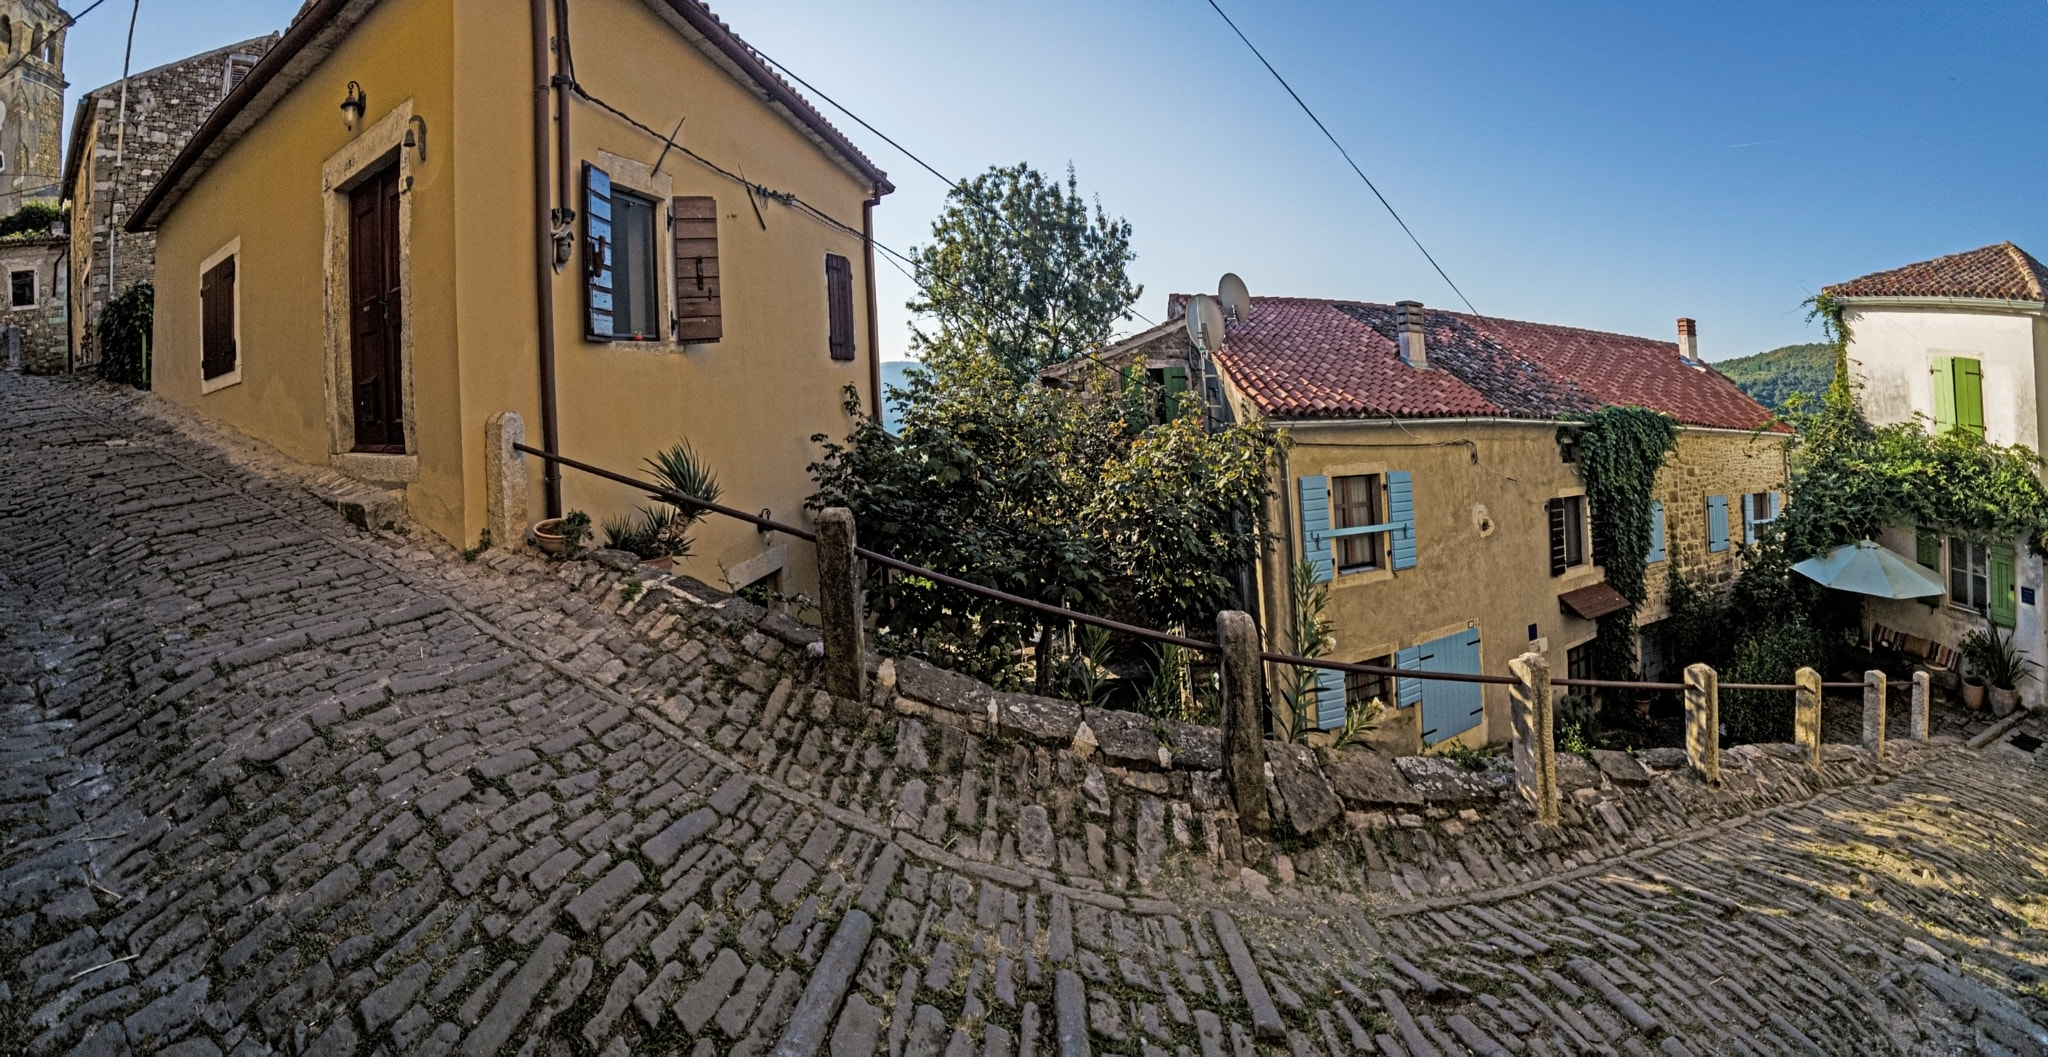 Picture of the romantic cobblestone access road to Motovun